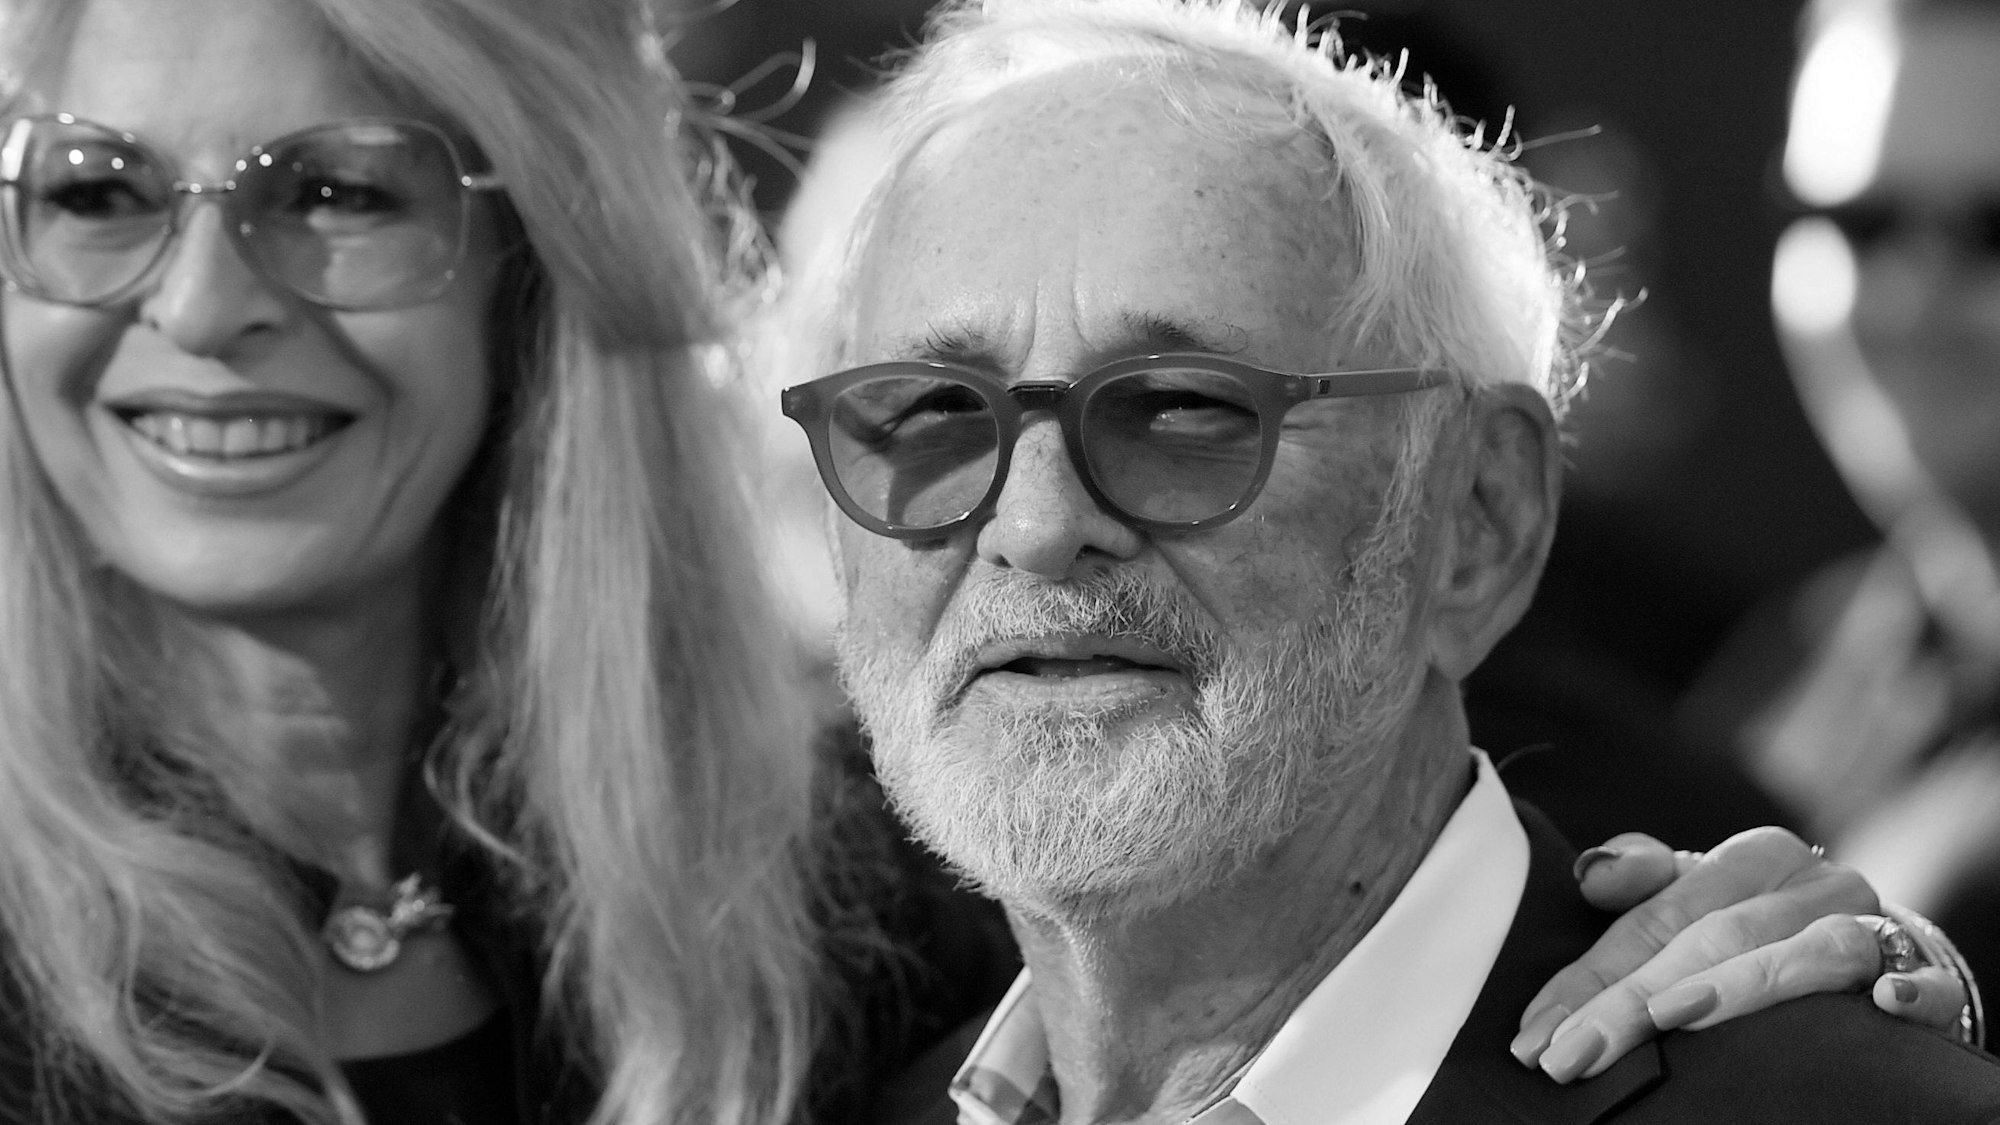 07.04.2017, USA, Los Angeles: Norman Jewison, Regisseur des Films "In der Hitze der Nacht" von 1967, mit seiner Frau Lynne St. David vor einer Vorführung des Films zum 50-jährigen Jubiläum beim TCM Classic Film Festival 2017 in Los Angeles.